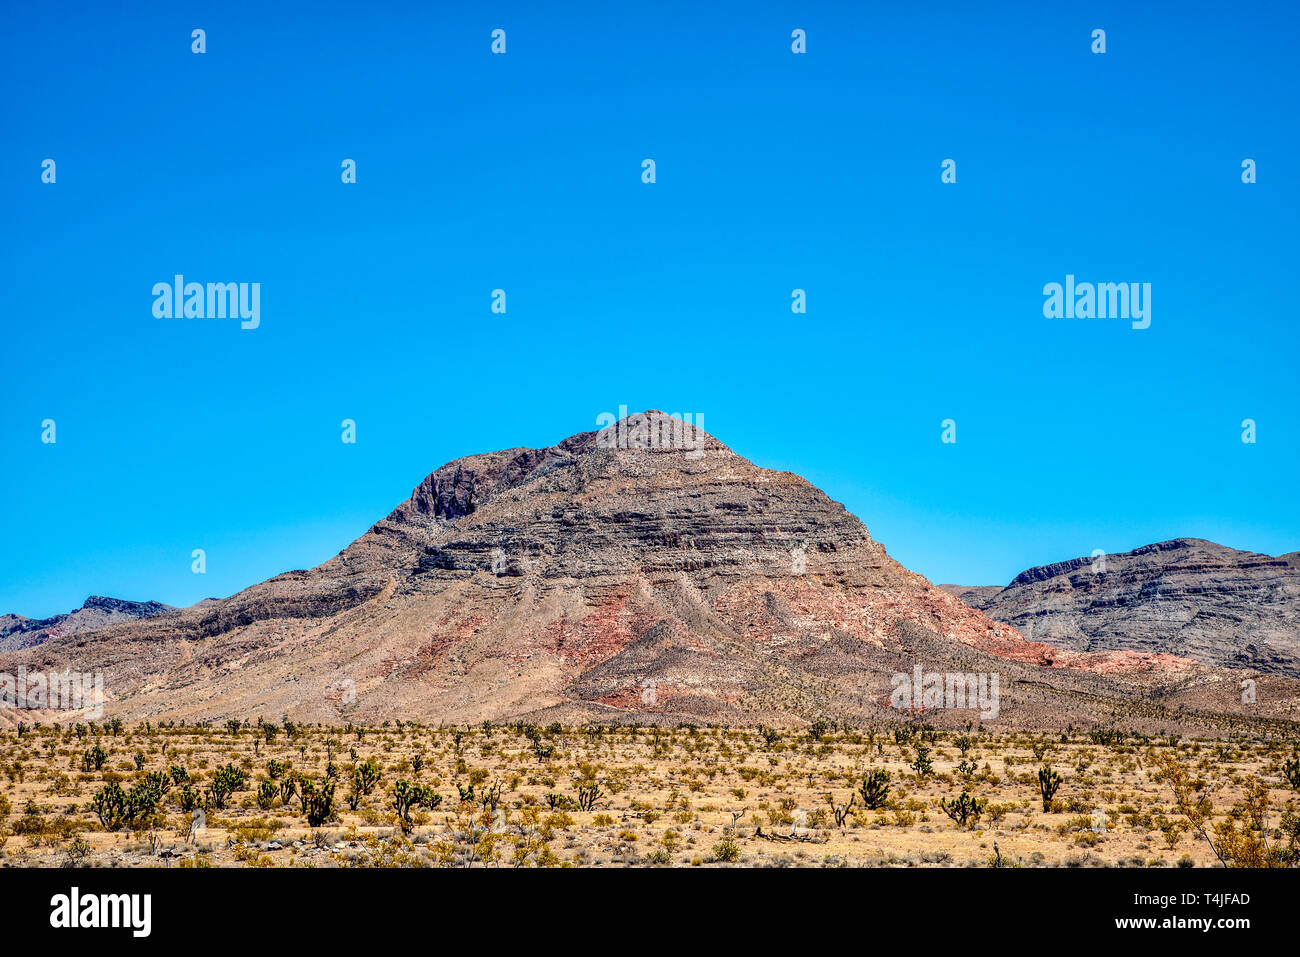 Deserto con pennello e cactus, rossastro rocciose montagne brulle sotto il cielo blu chiaro. Foto Stock